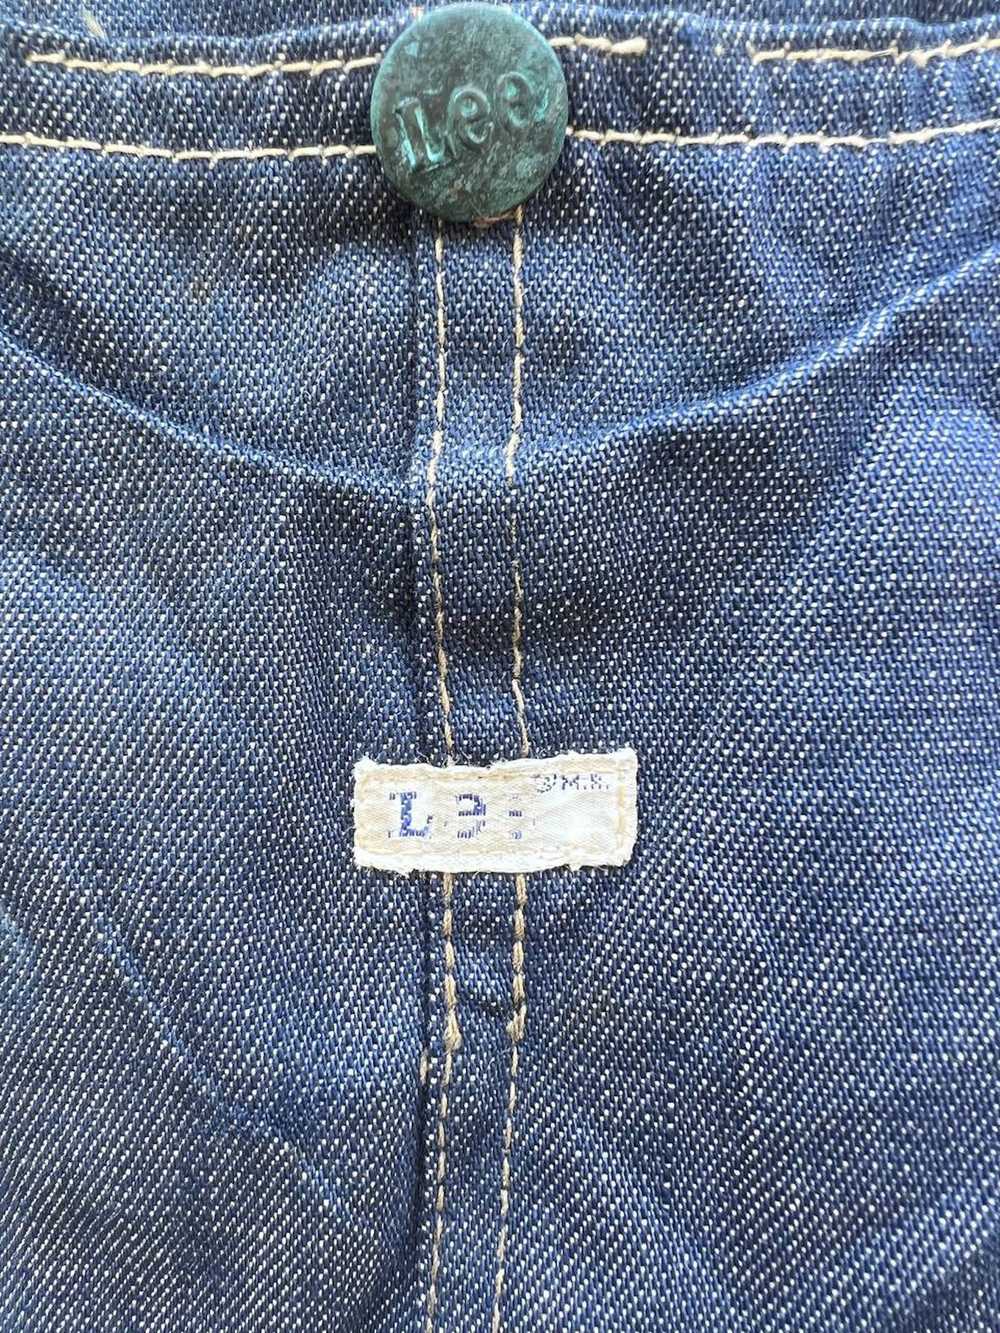 Denim Jacket × Lee 1950s Lee Union Made Blanket D… - image 10